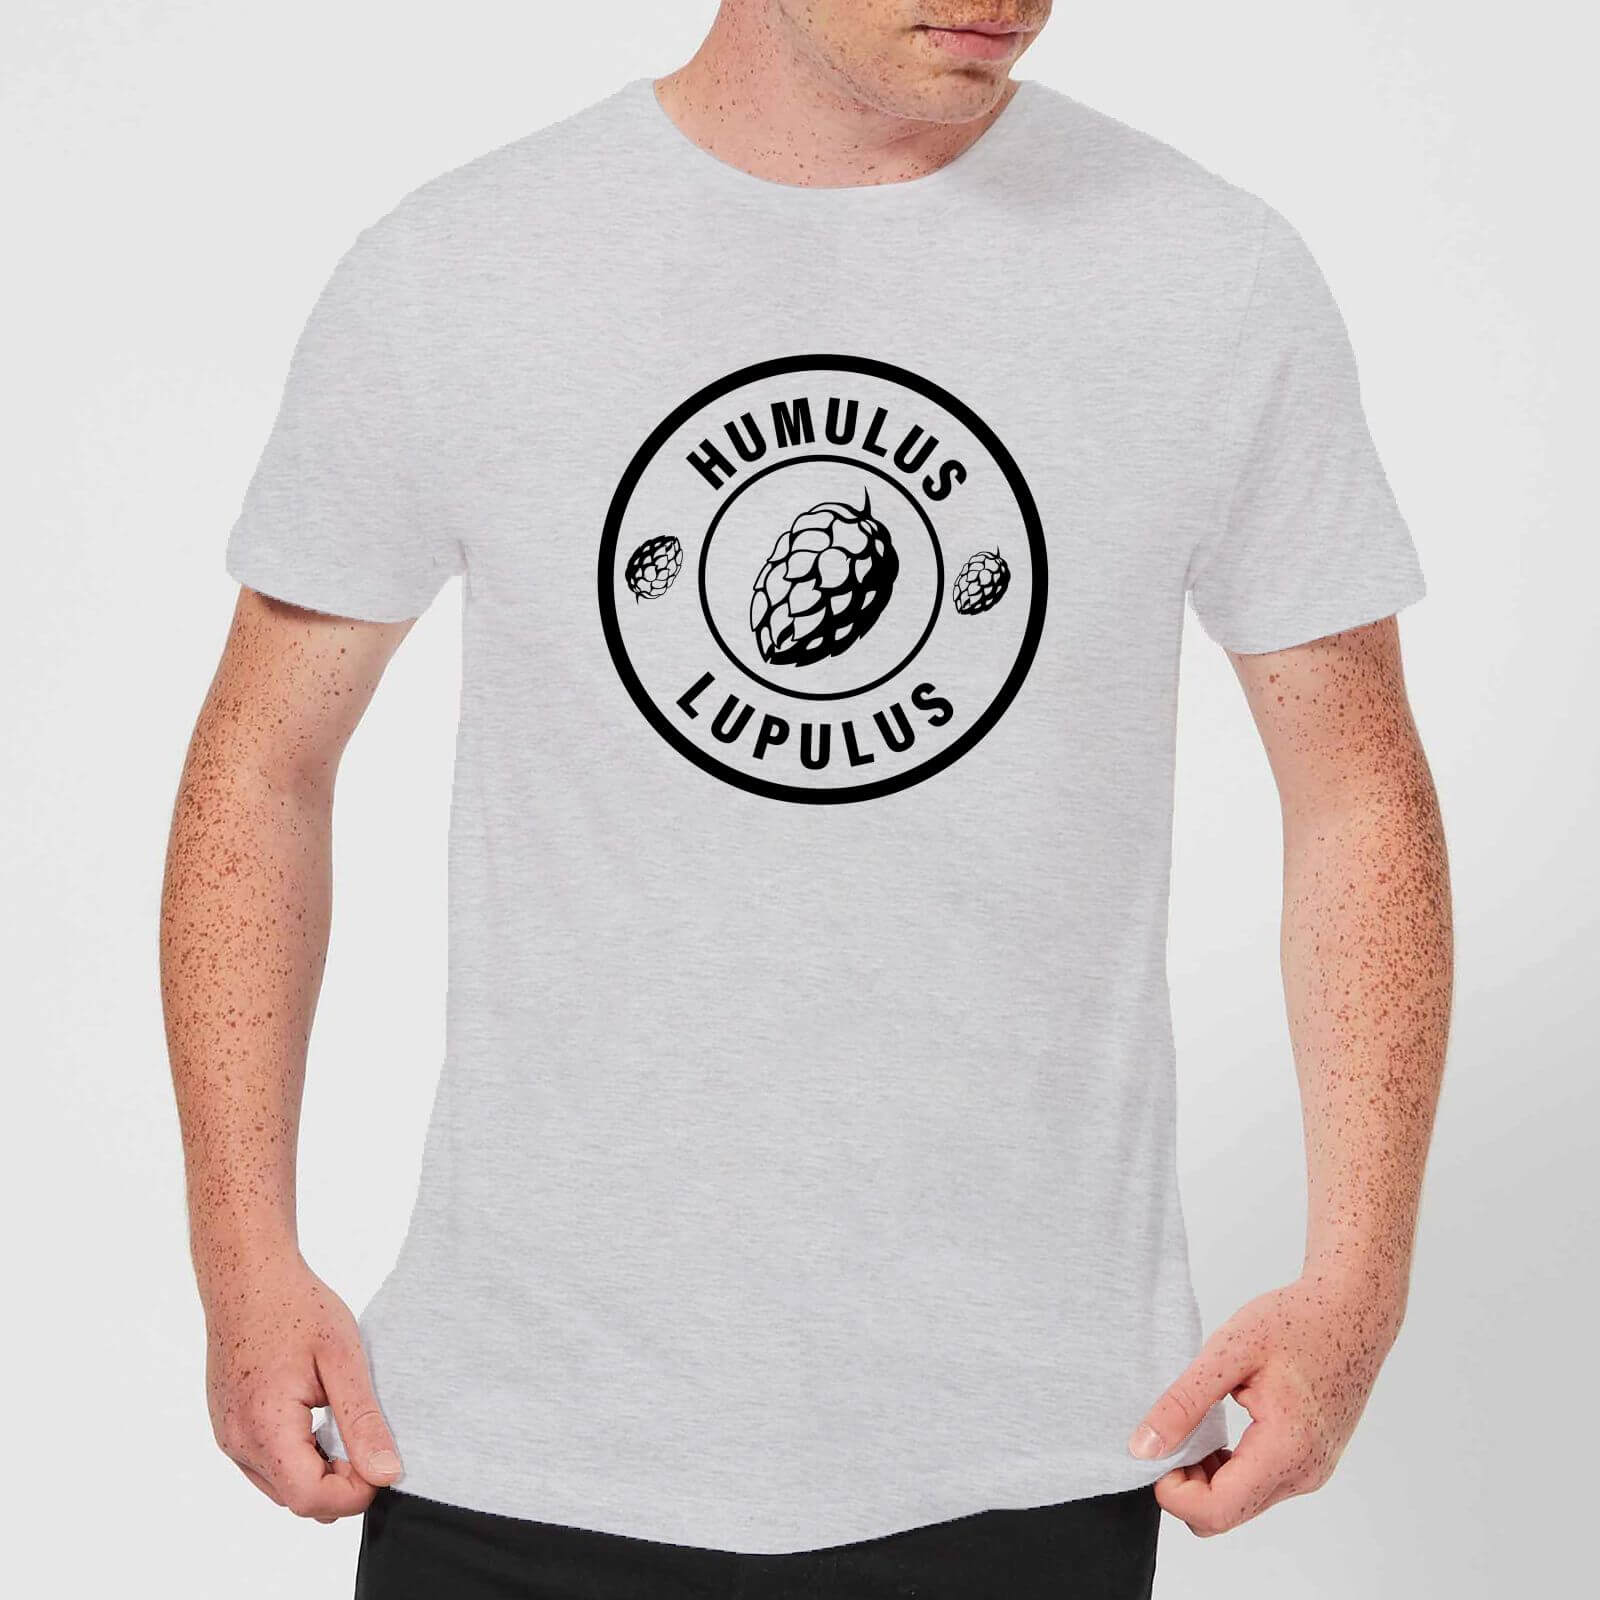 Beershield Humulus Lupulus Men's T-Shirt - S - Grey